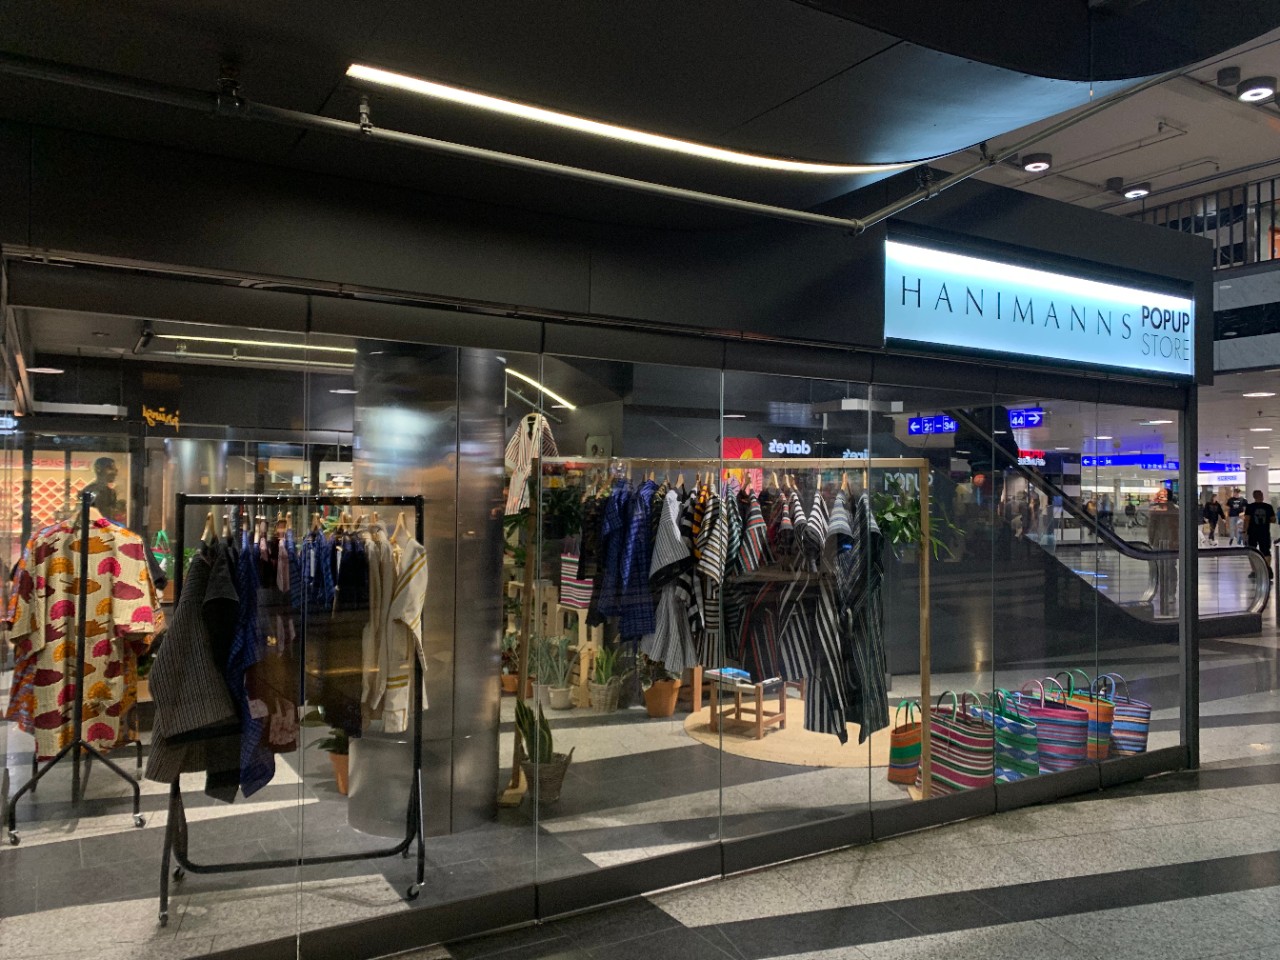 Der gläserne Pop-Up Store «Hannimanns» befindet sich hinter der Rolltreppe, welche die Passage Bahnhofstrasse mit der Bahnhofhalle verbindet.